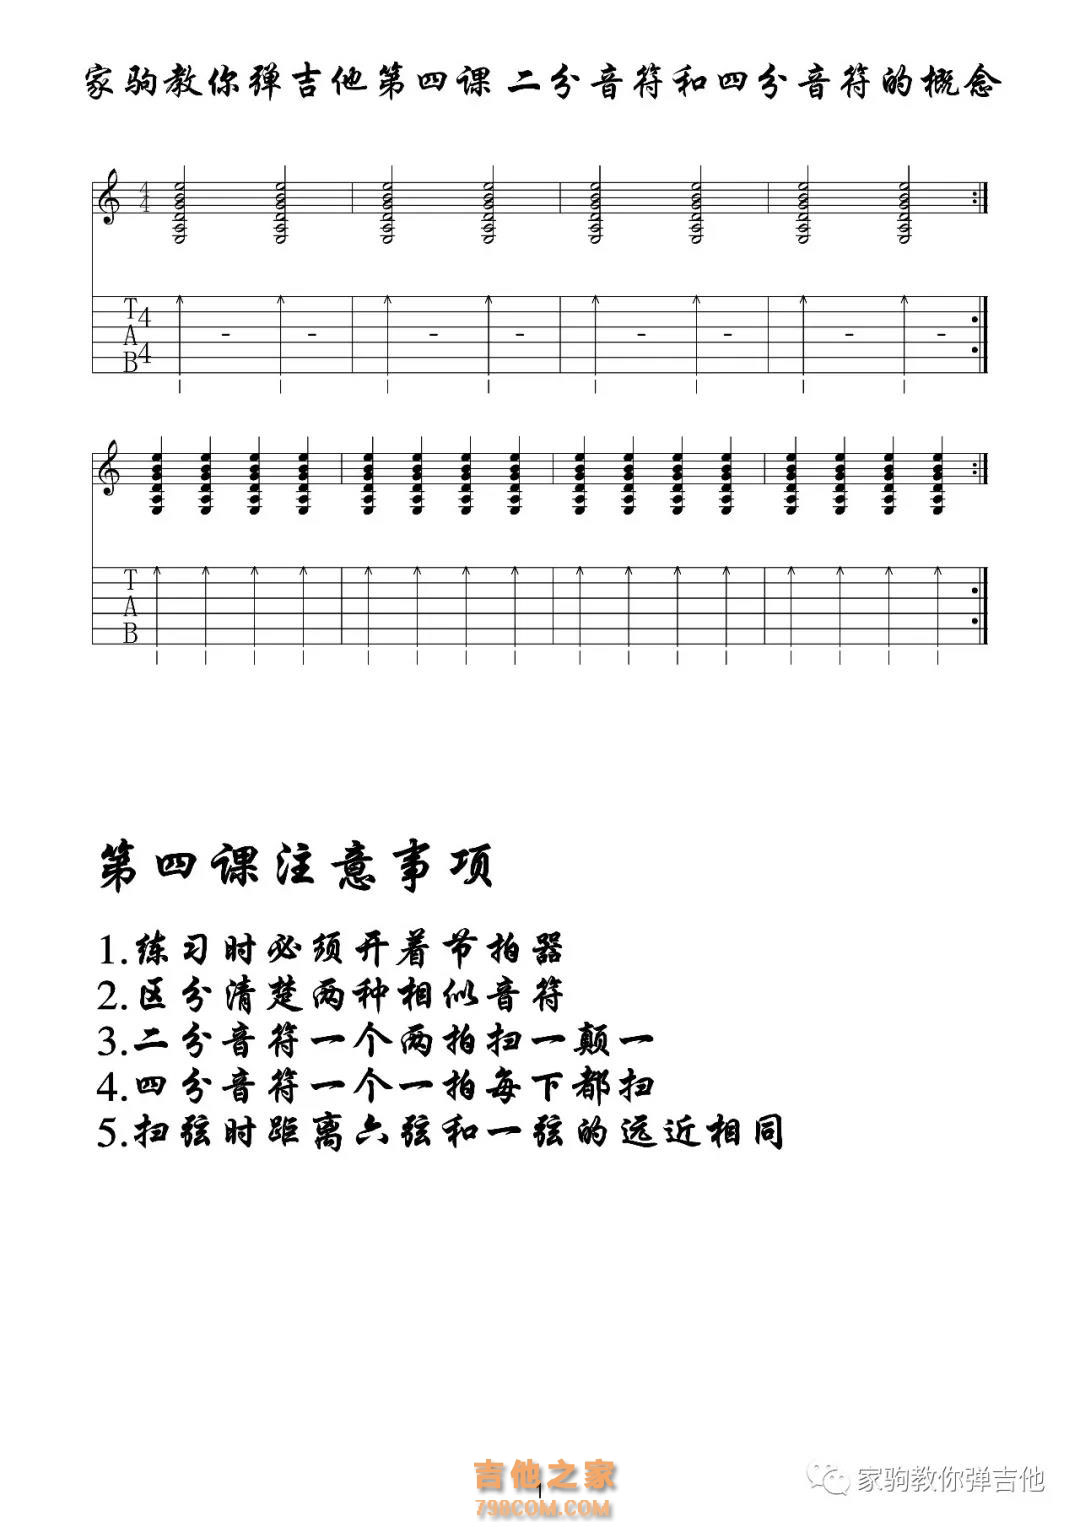 分解和弦练习03（八分音符）吉他谱 -彼岸吉他 - 一站式吉他爱好者服务平台